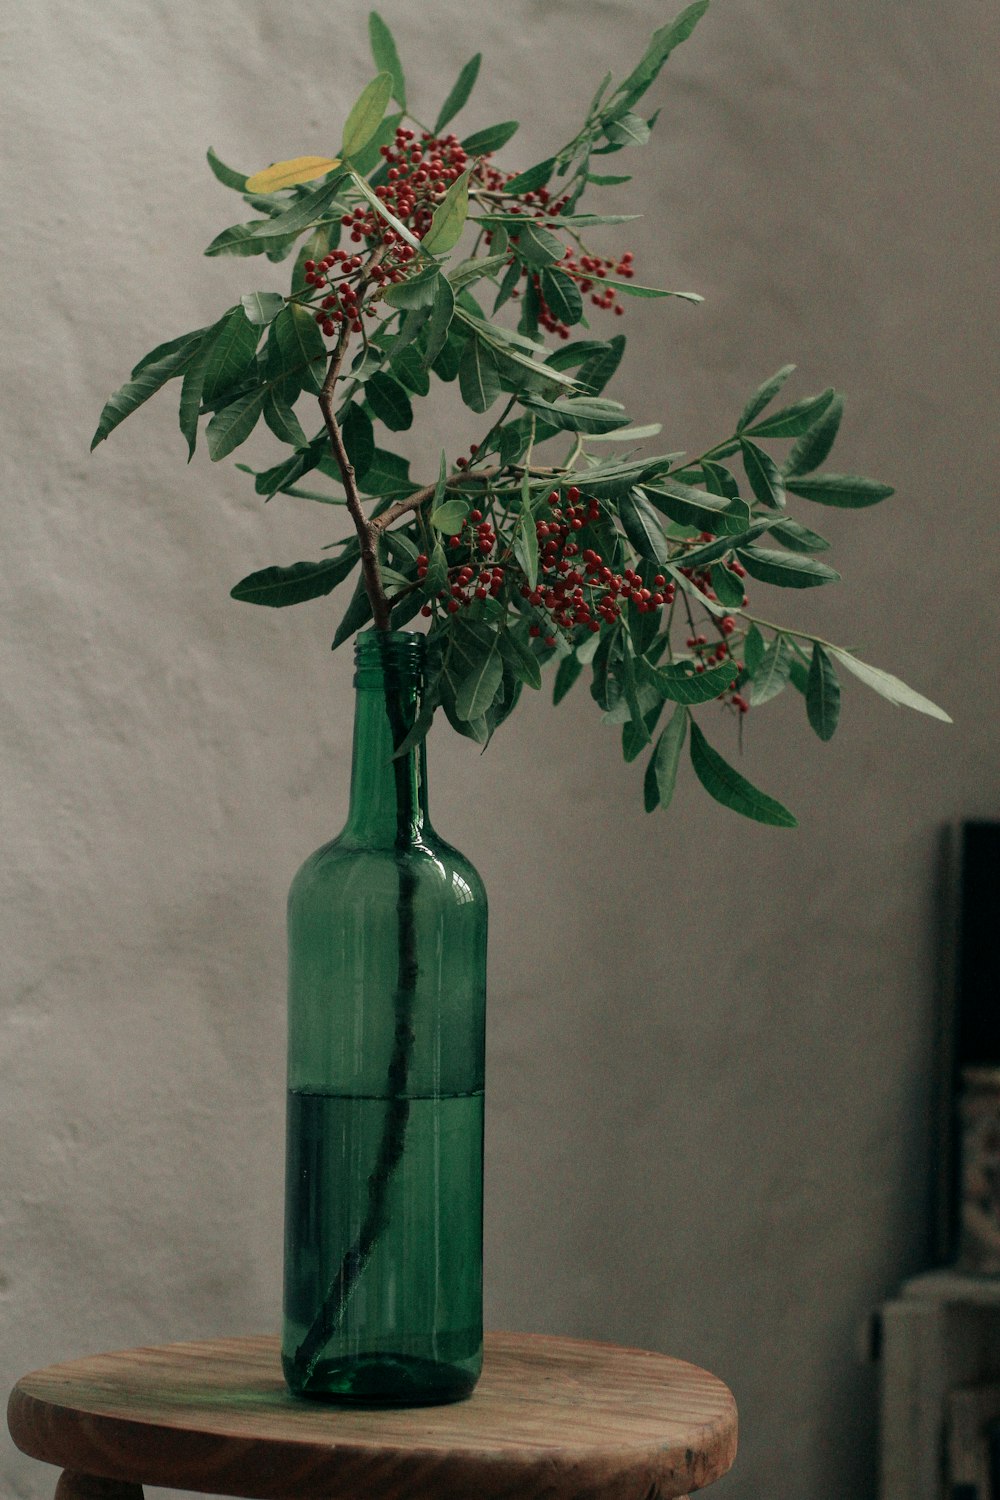 planta roja y verde en jarrón de vidrio verde